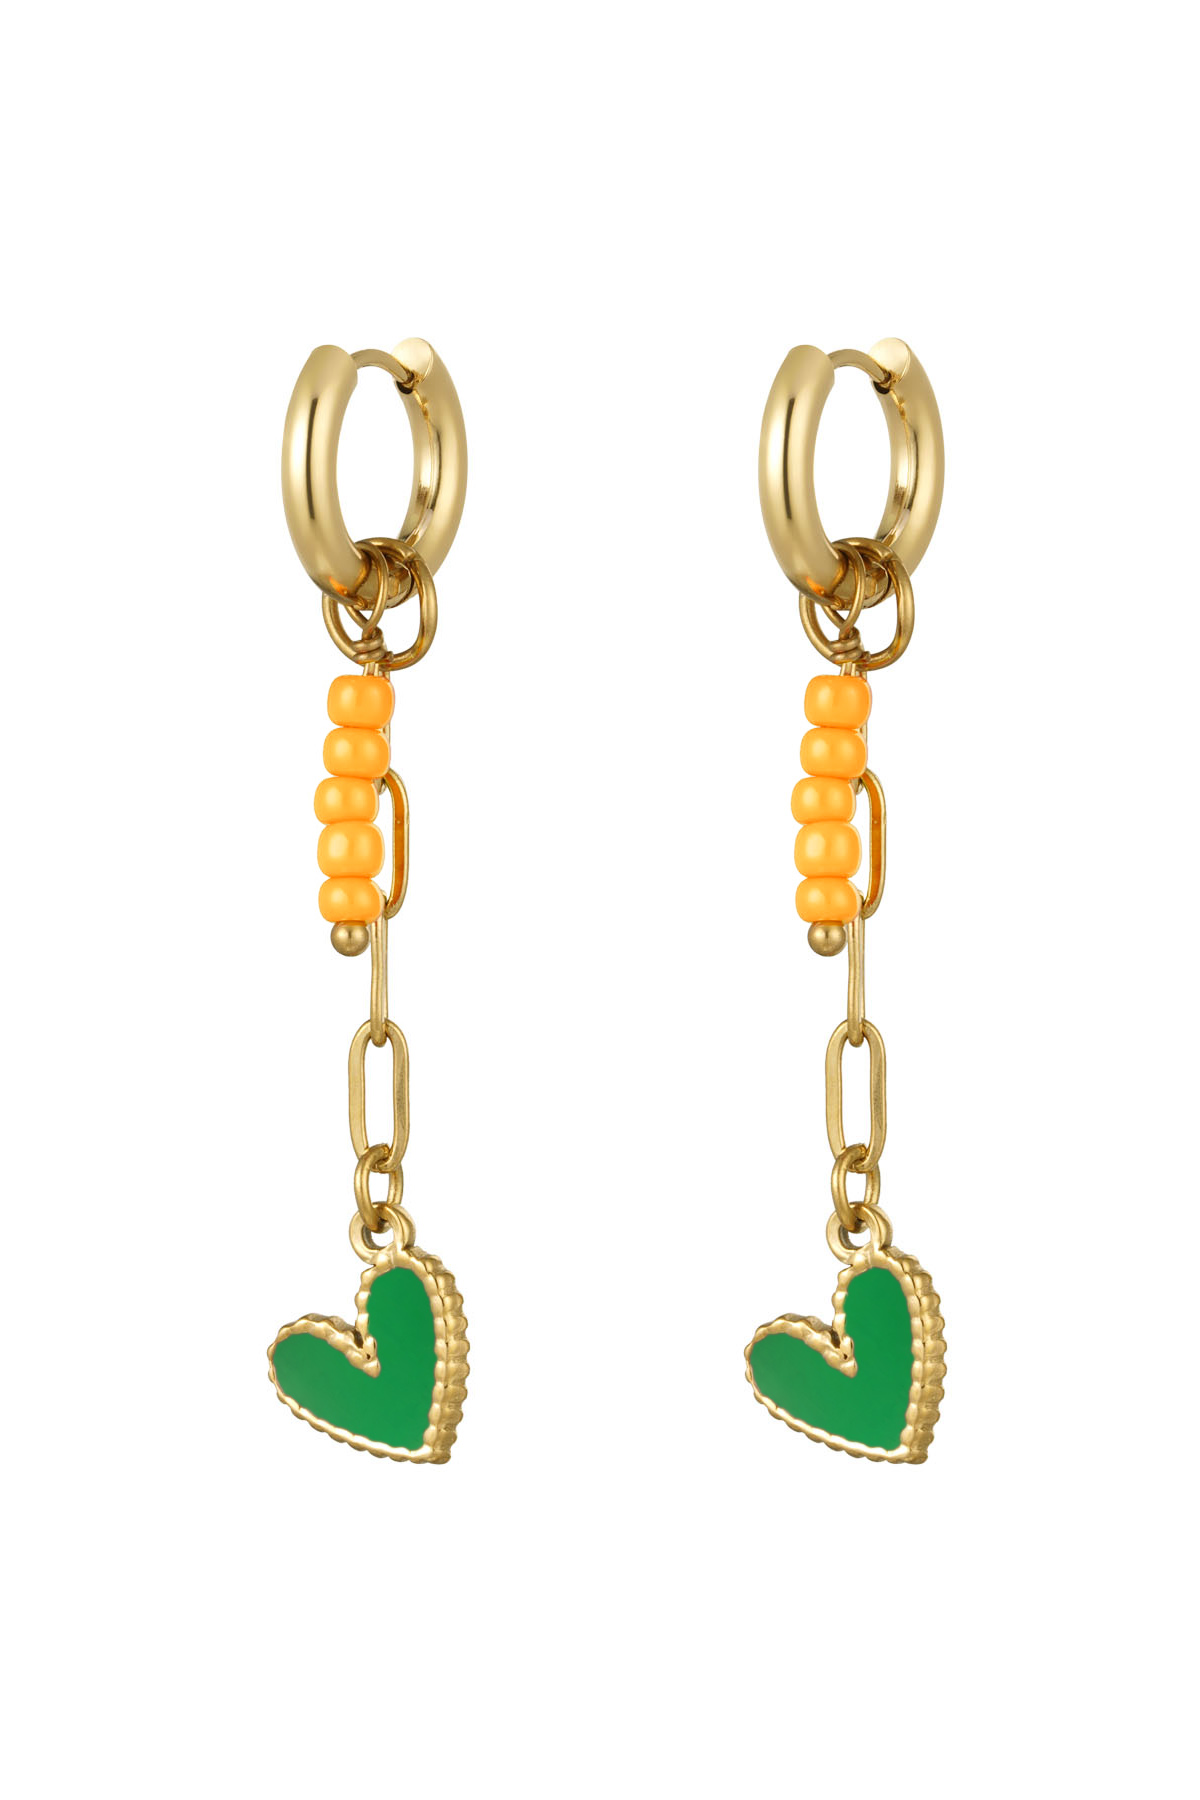 Ohrringe Halskette mit Perlen und Herz orange - grün - gold